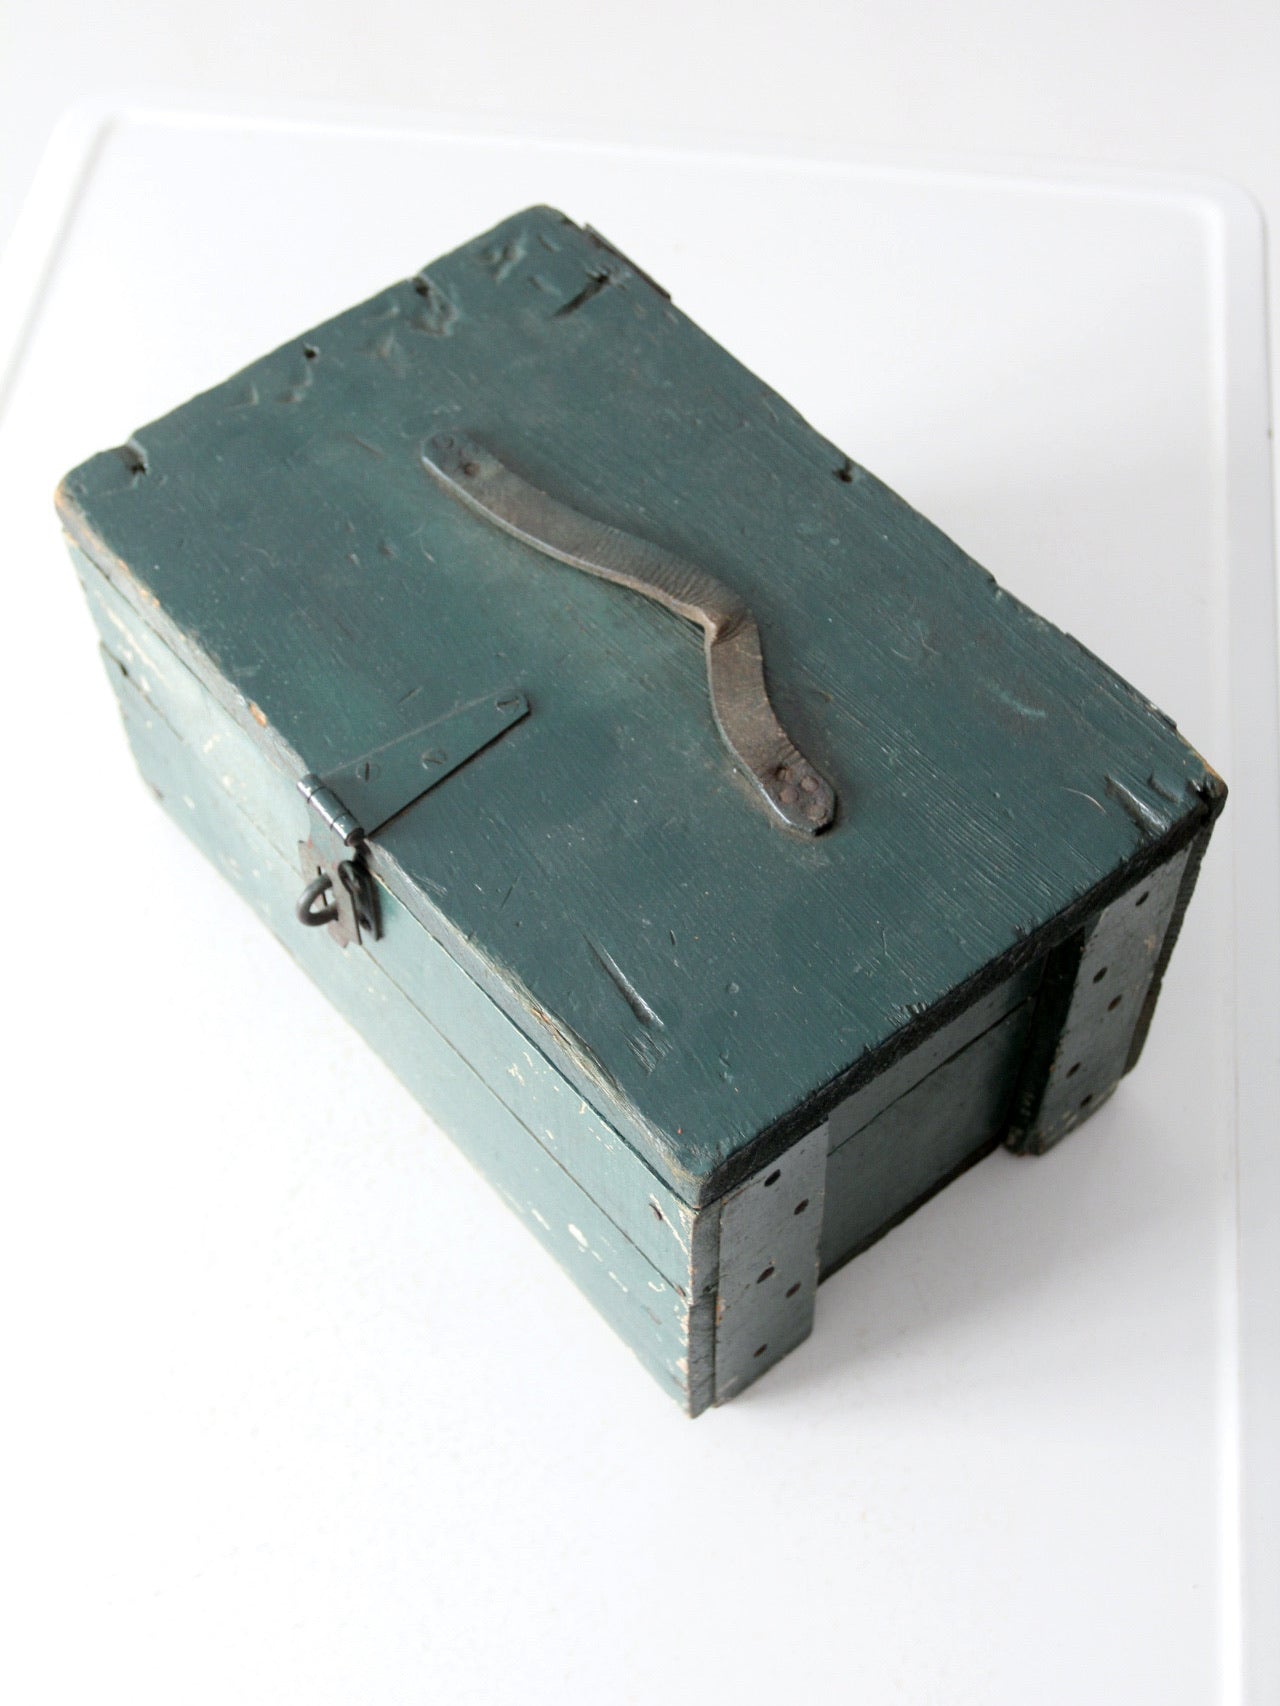 vintage painted wood tool box